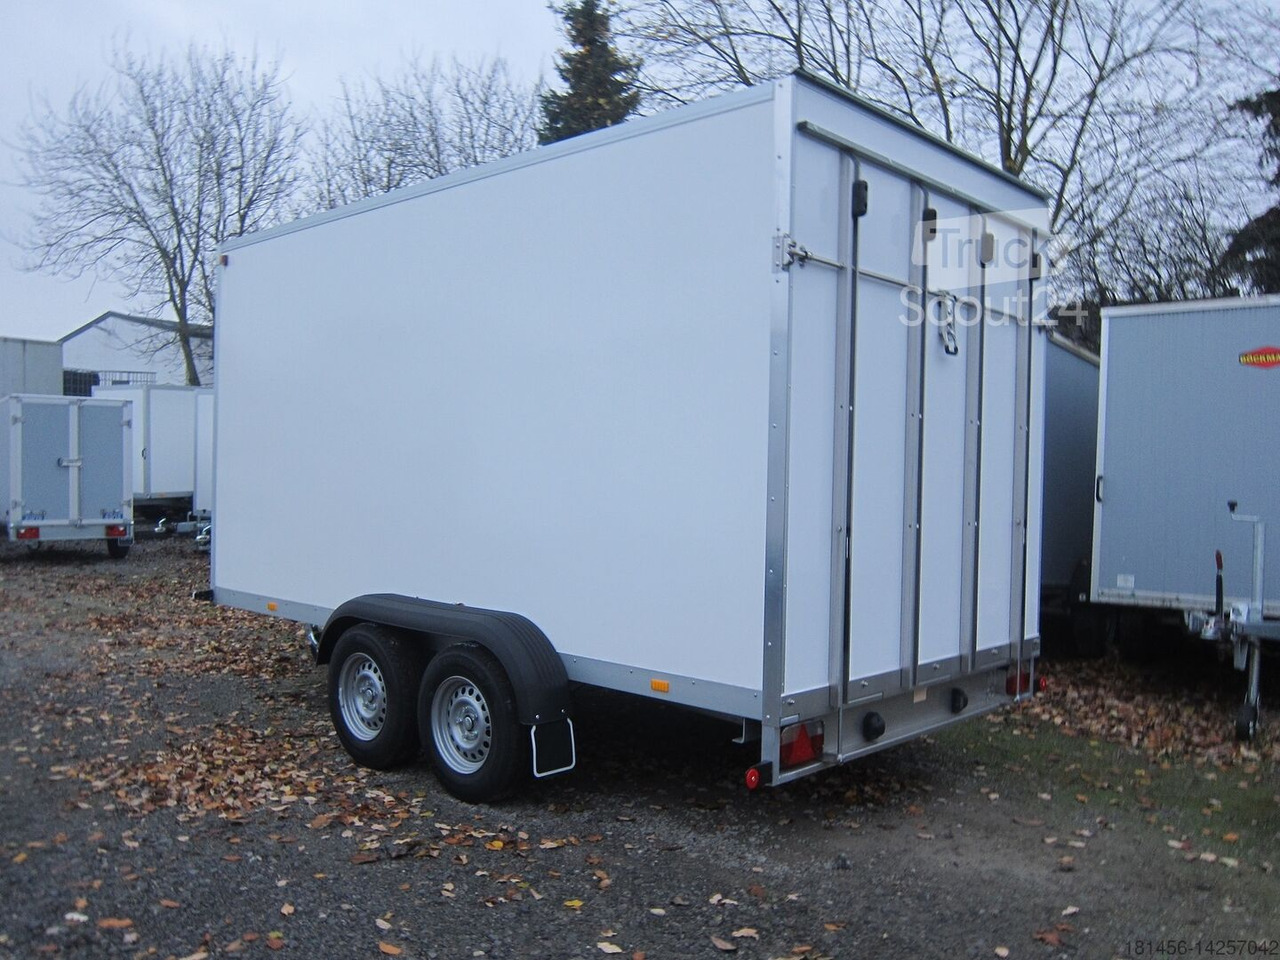 Wm Meyer direkt AZ 2740/185 Heckrampe abholen nach Bestellung in unserem trailershop - Car trailer: picture 3